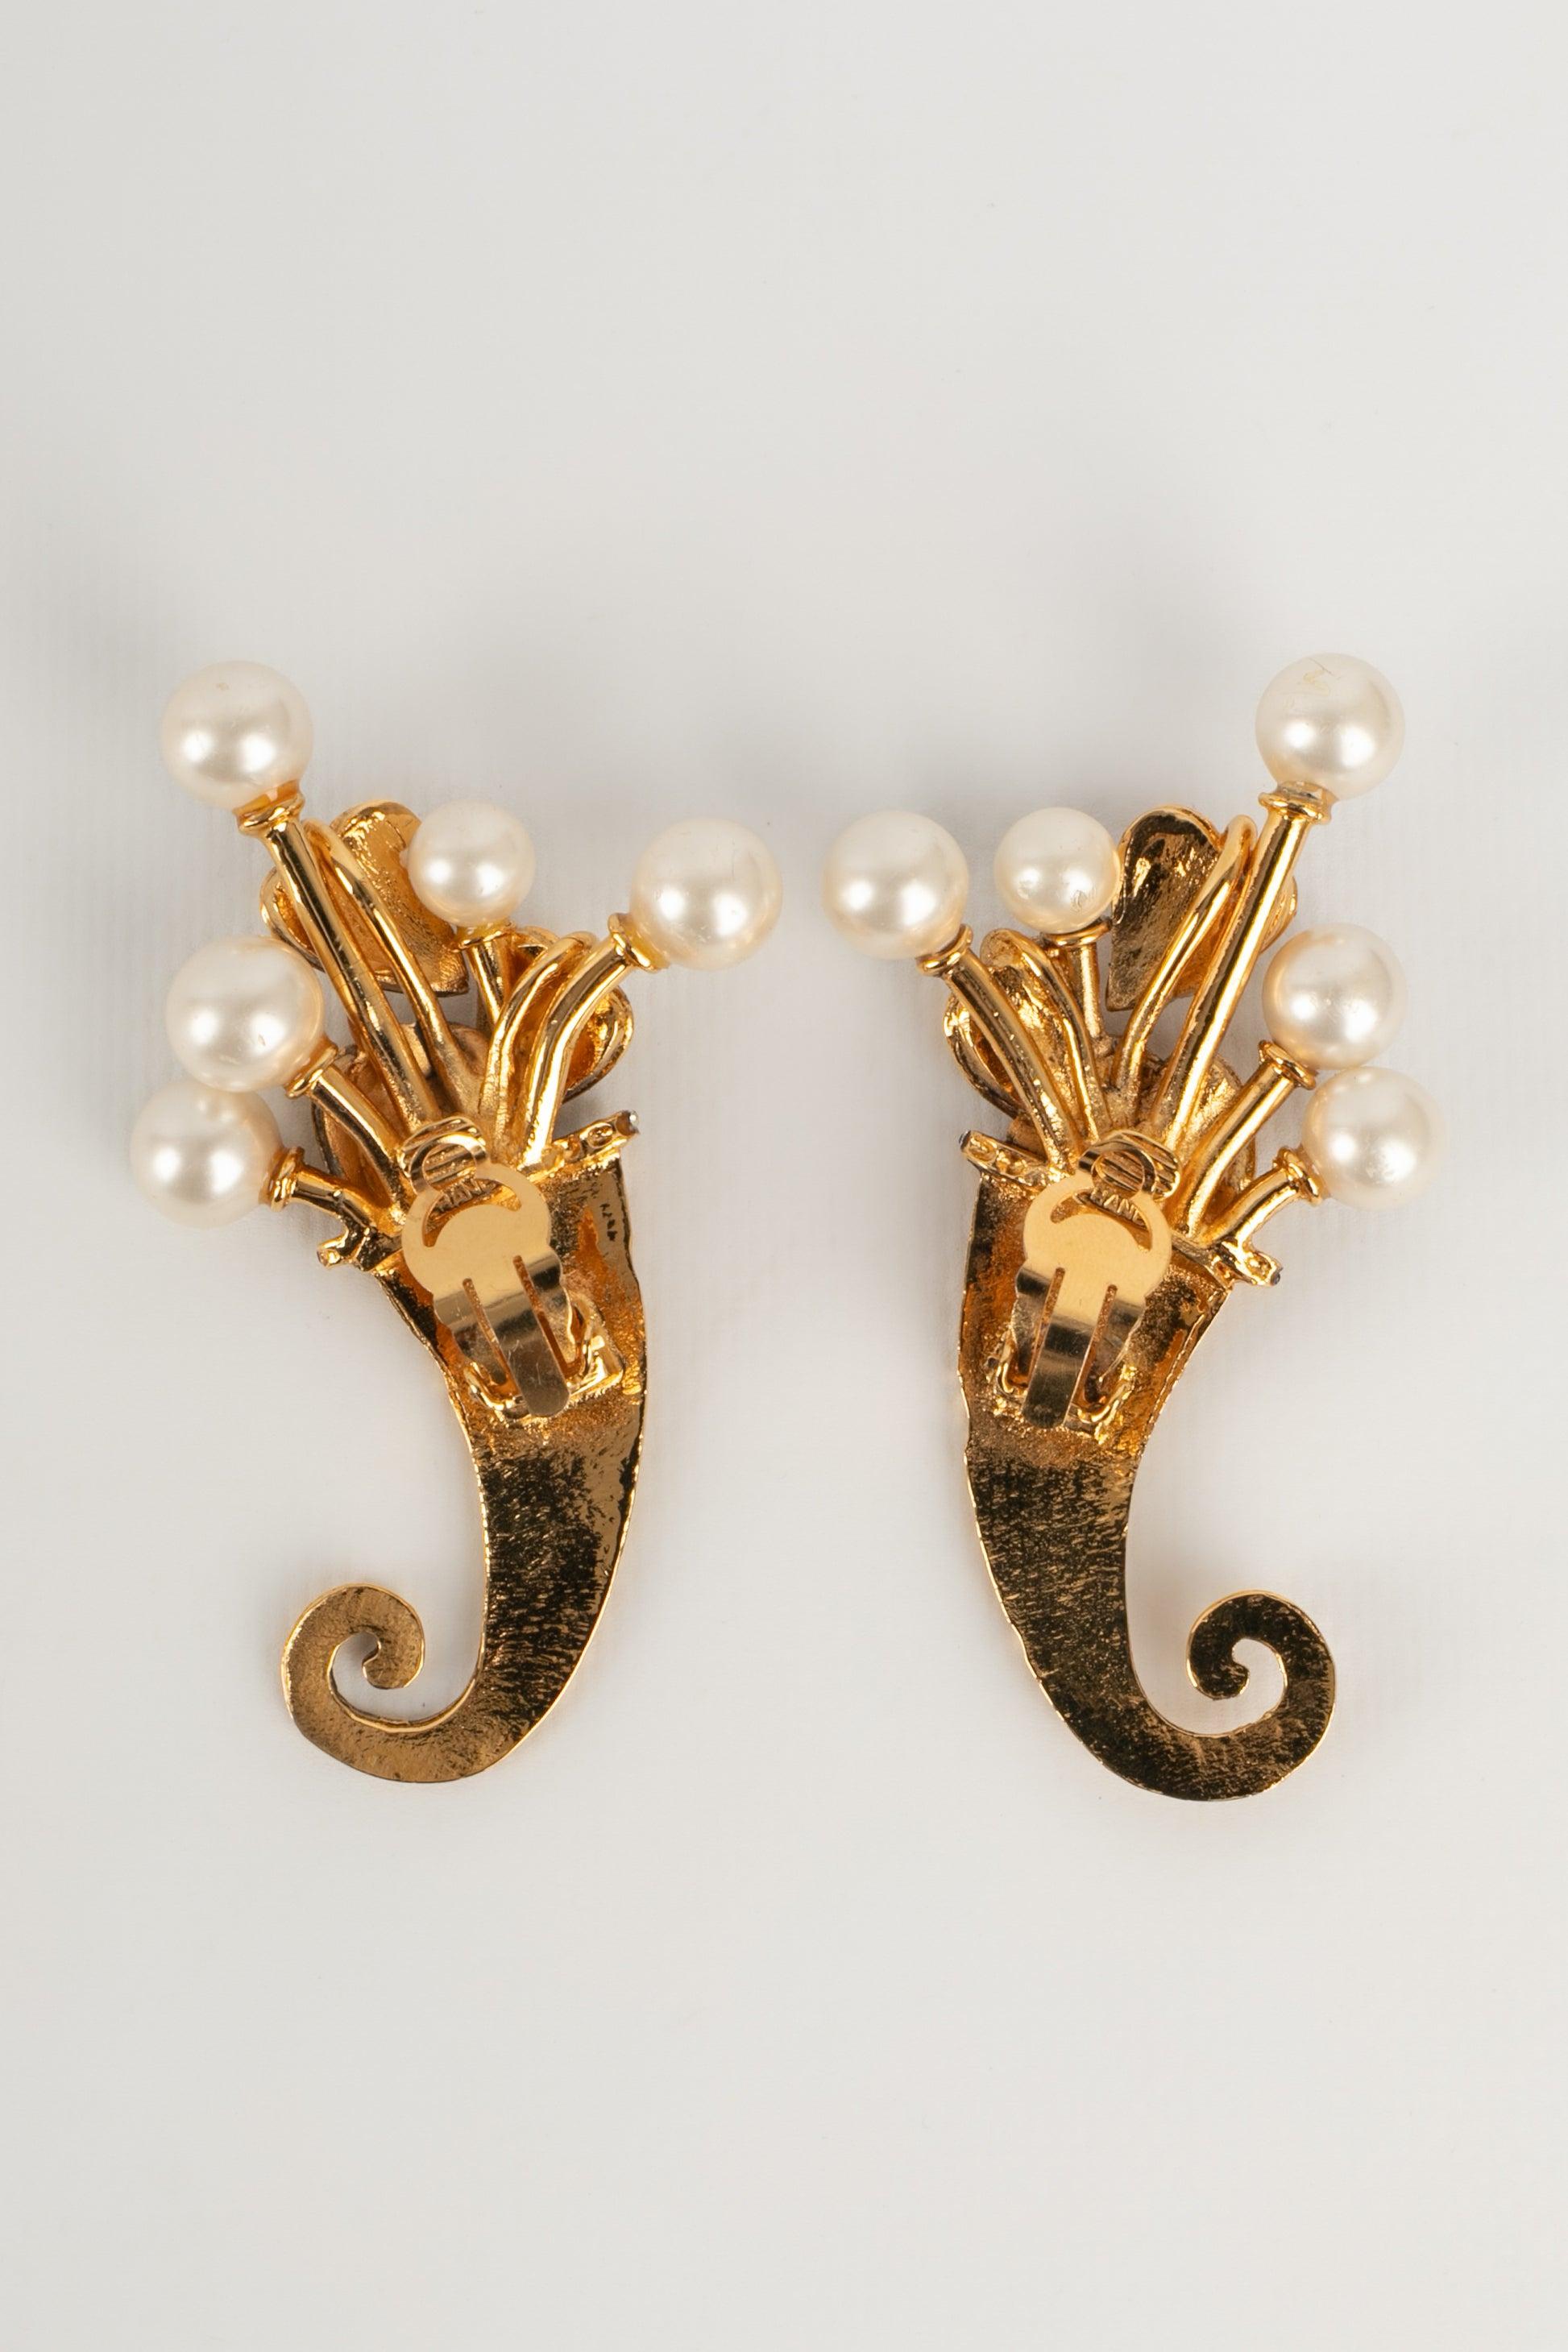 Chanel - Goldene Ohrringe aus Metall mit Kostümperlen und Strasssteinen.

Zusätzliche Informationen:
Zustand: Sehr guter Zustand
Abmessungen: Höhe: 7,5 cm

Sellers Referenz: BOB147